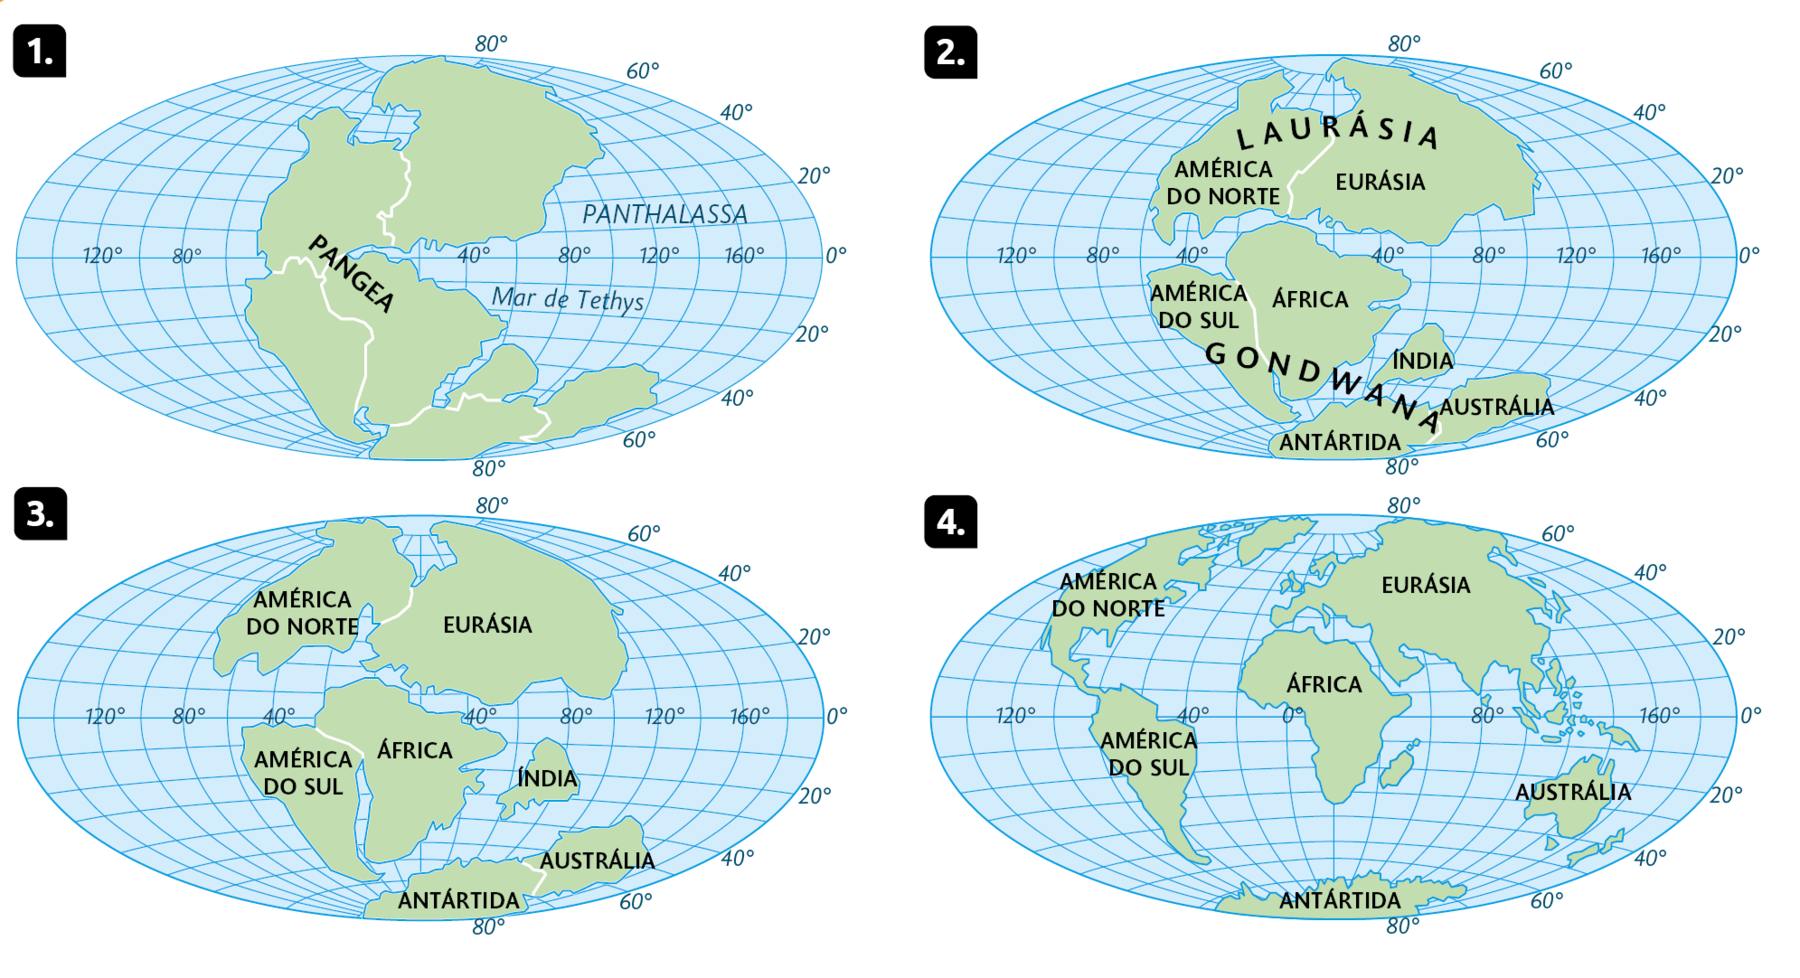 Mapa 1. Com os continentes atuais unidos ao centro do globo, compondo a Pangeia; no leste, o Mar de Tethys. Acima, a indicação: Panthalassa. 
Mapa 2. Na região norte, a Laurásia composta pela América do Norte e Eurásia, no centro-sul, Gondwana composto pela América do Sul, África, Índia, Austrália e Antártida. 
Mapa 3. Na porção norte, América do Norte e Eurásia, no centro-sul, América do Sul, África e separados: Índia, Austrália e Antártida unidas. 
Mapa 4. Os continentes nas posições atuais, América do Norte na região noroeste, e América do Sul no oeste, África na região central, Eurásia no norte, Austrália no sudeste e Antártida no sul.